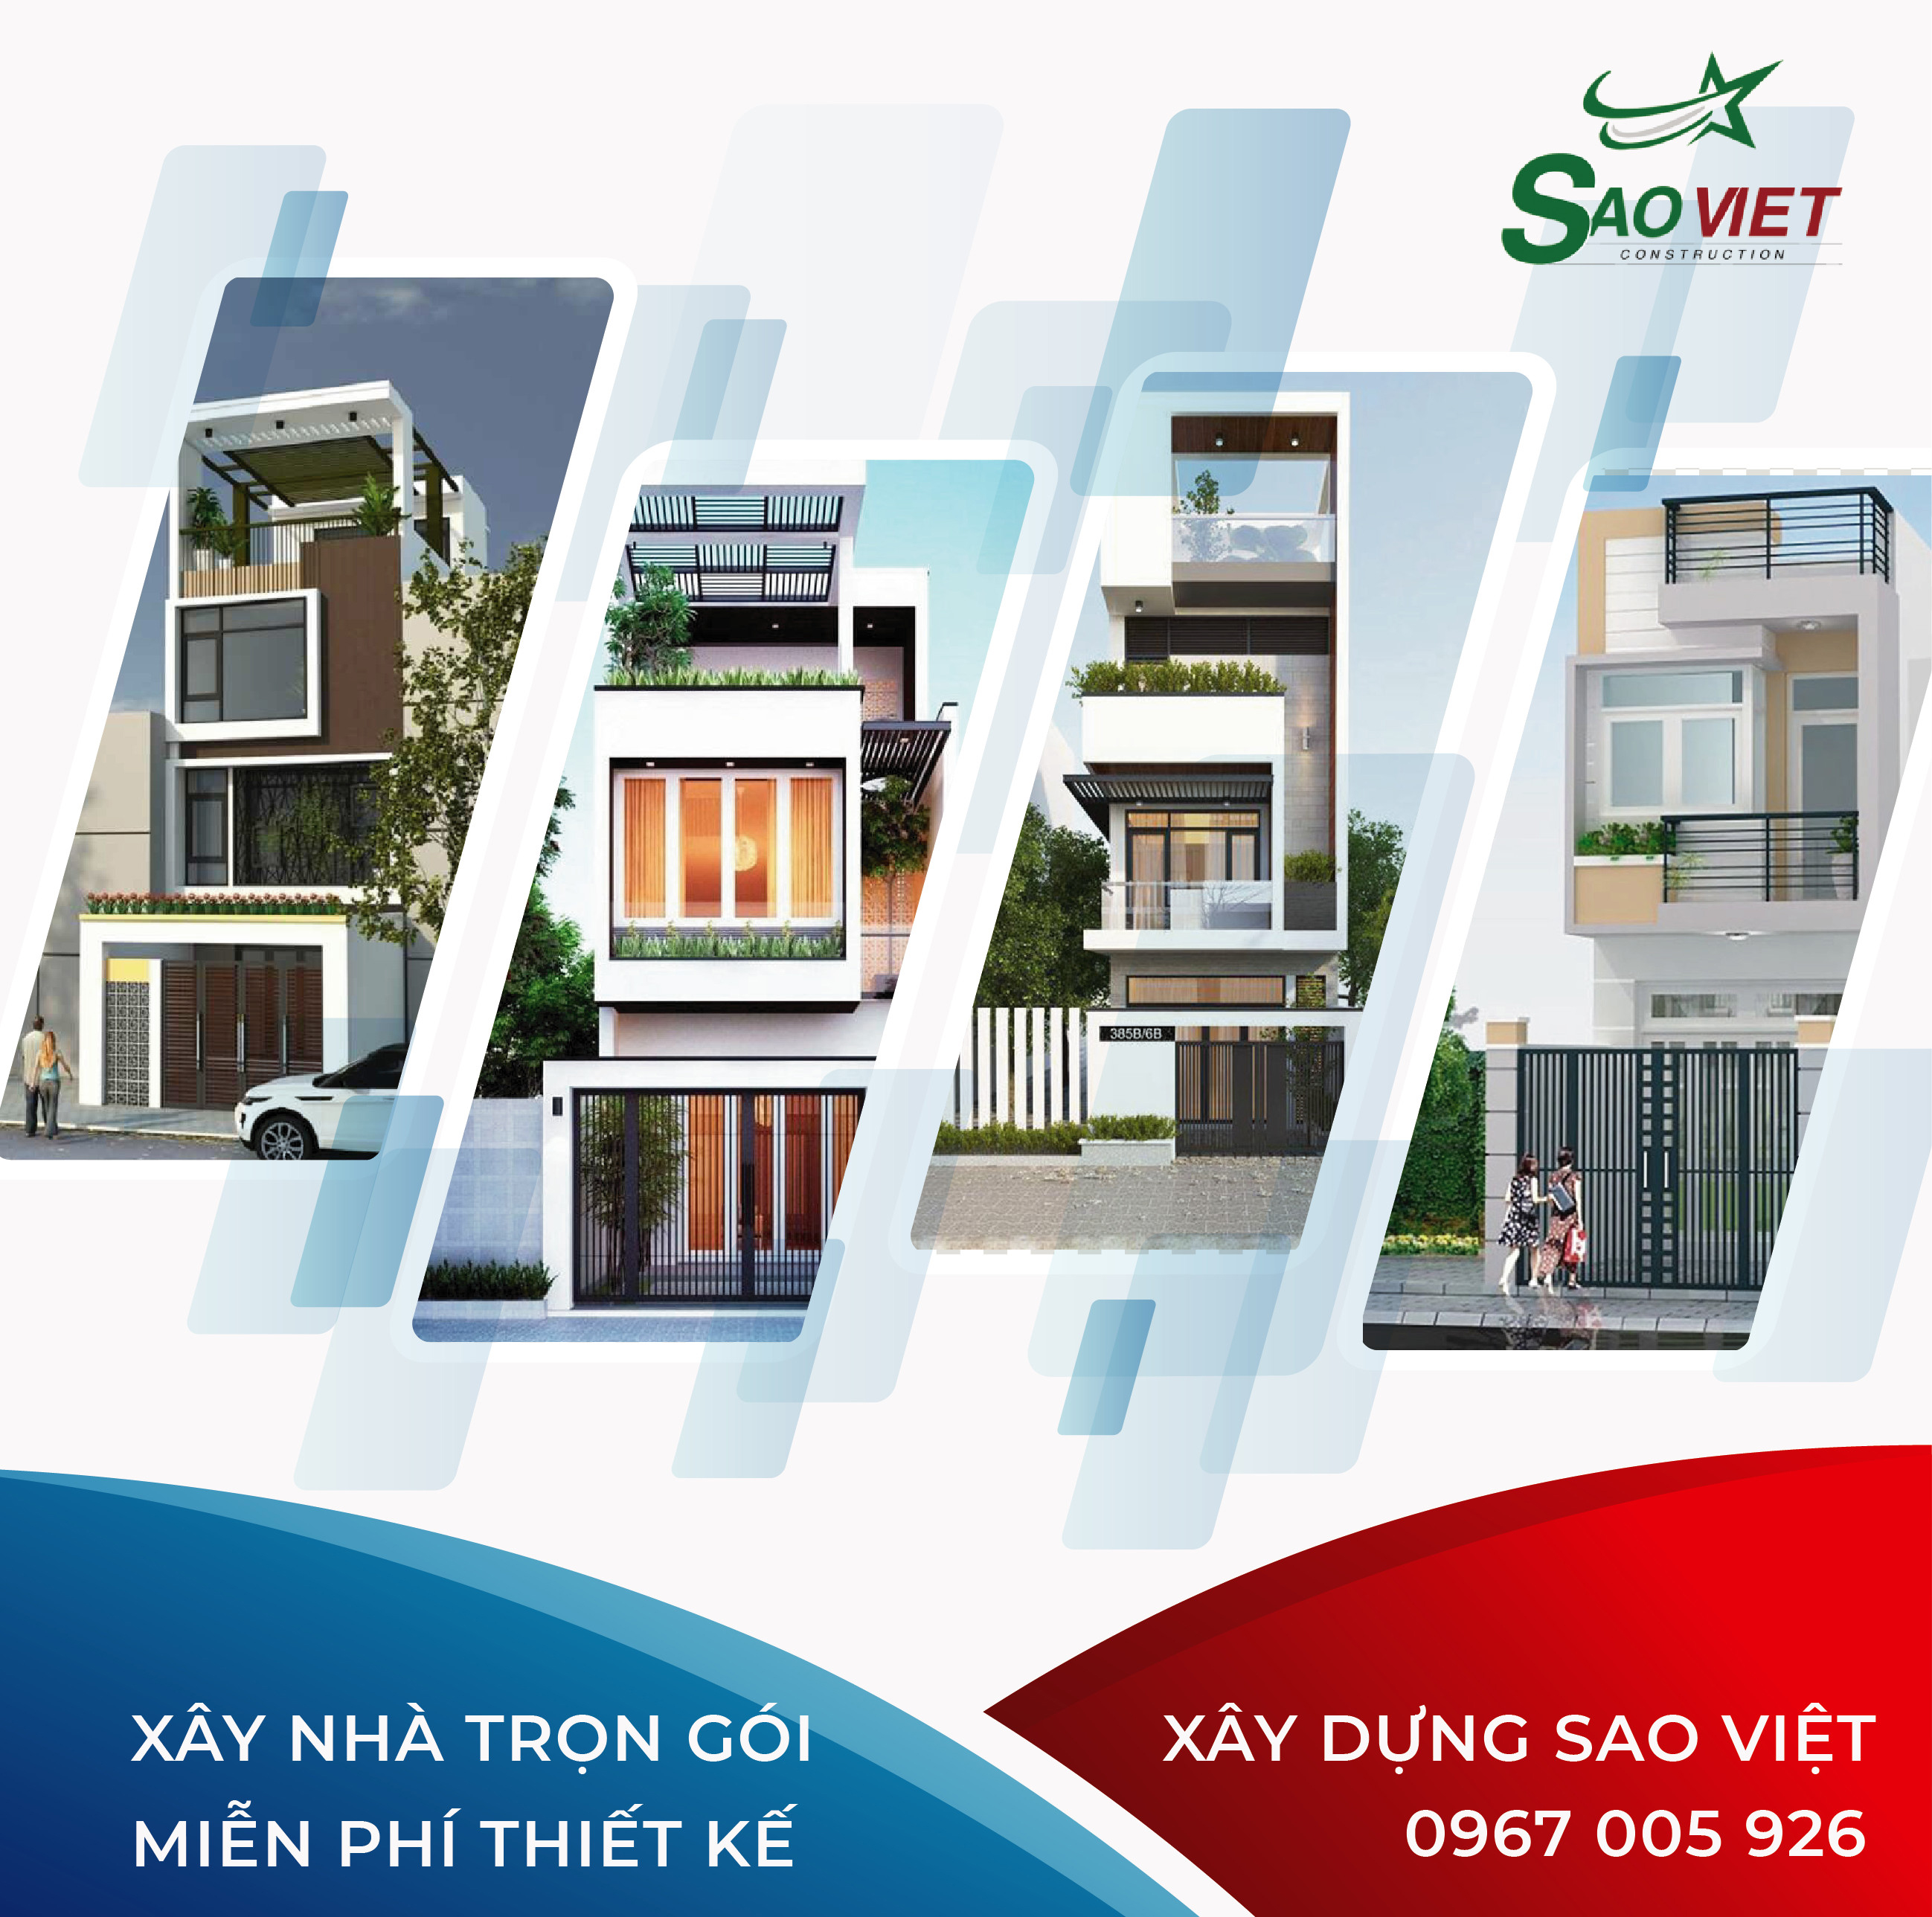 Báo giá xây nhà trọn gói chuyên nghiệp tại TPHCM - Xây Dựng Sao Việt